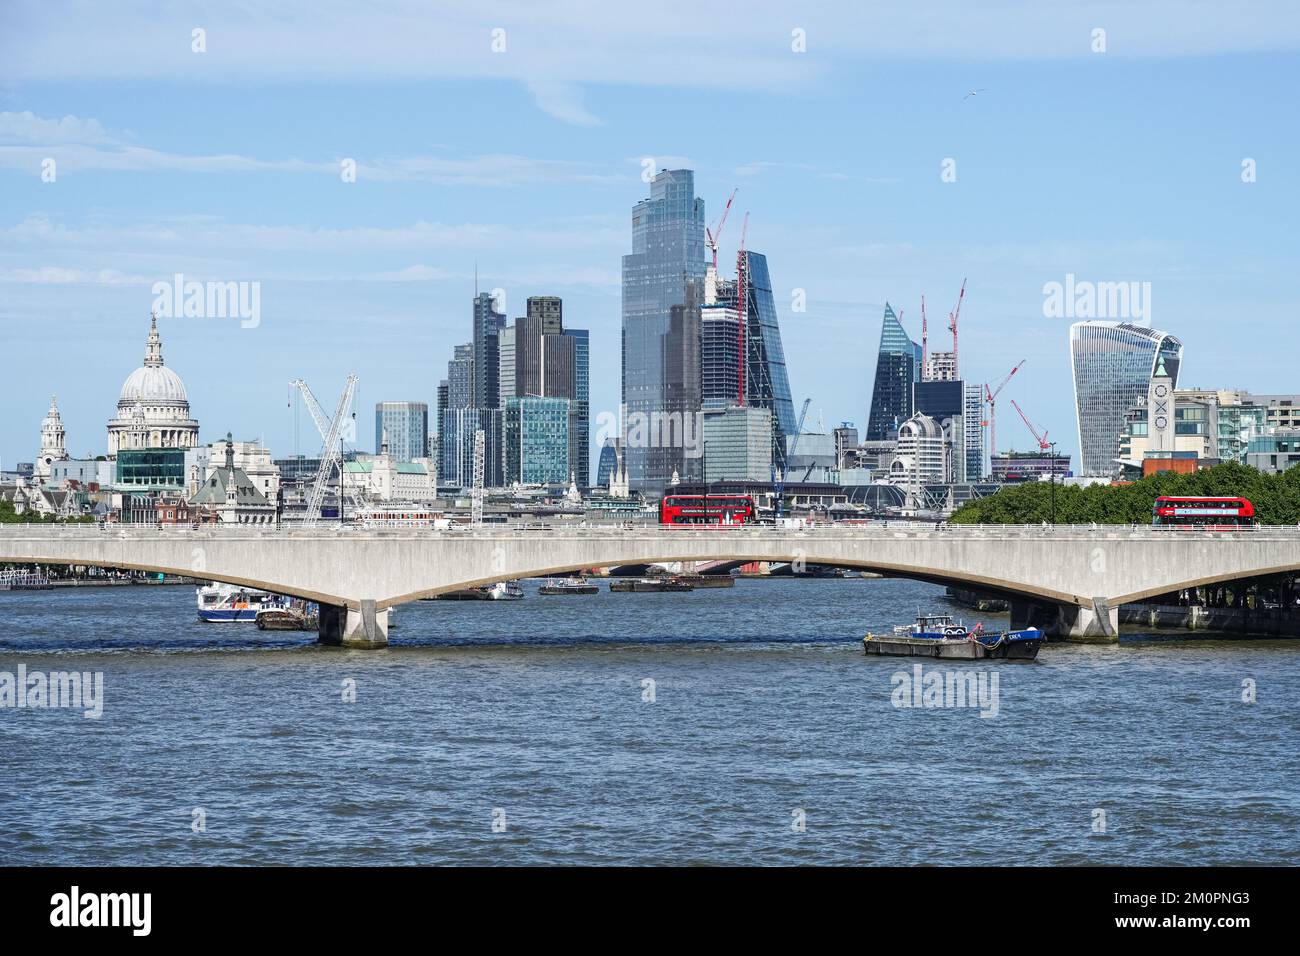 La ville de Londres avec la Tamise et le pont de Waterloo, Londres Angleterre Royaume-Uni Banque D'Images